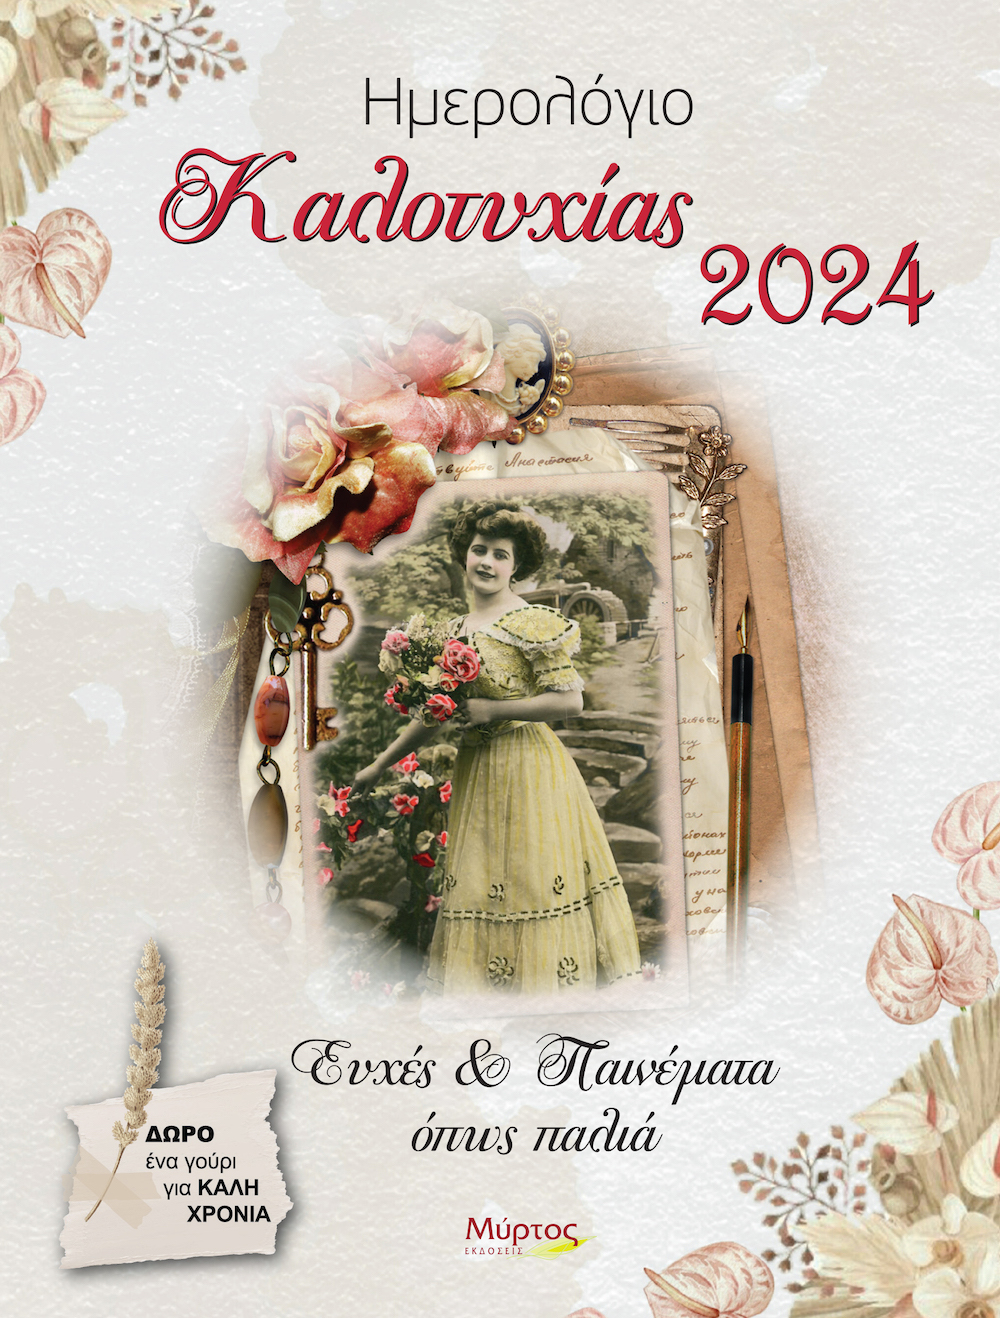 cover kalotyxias 2024 final 3